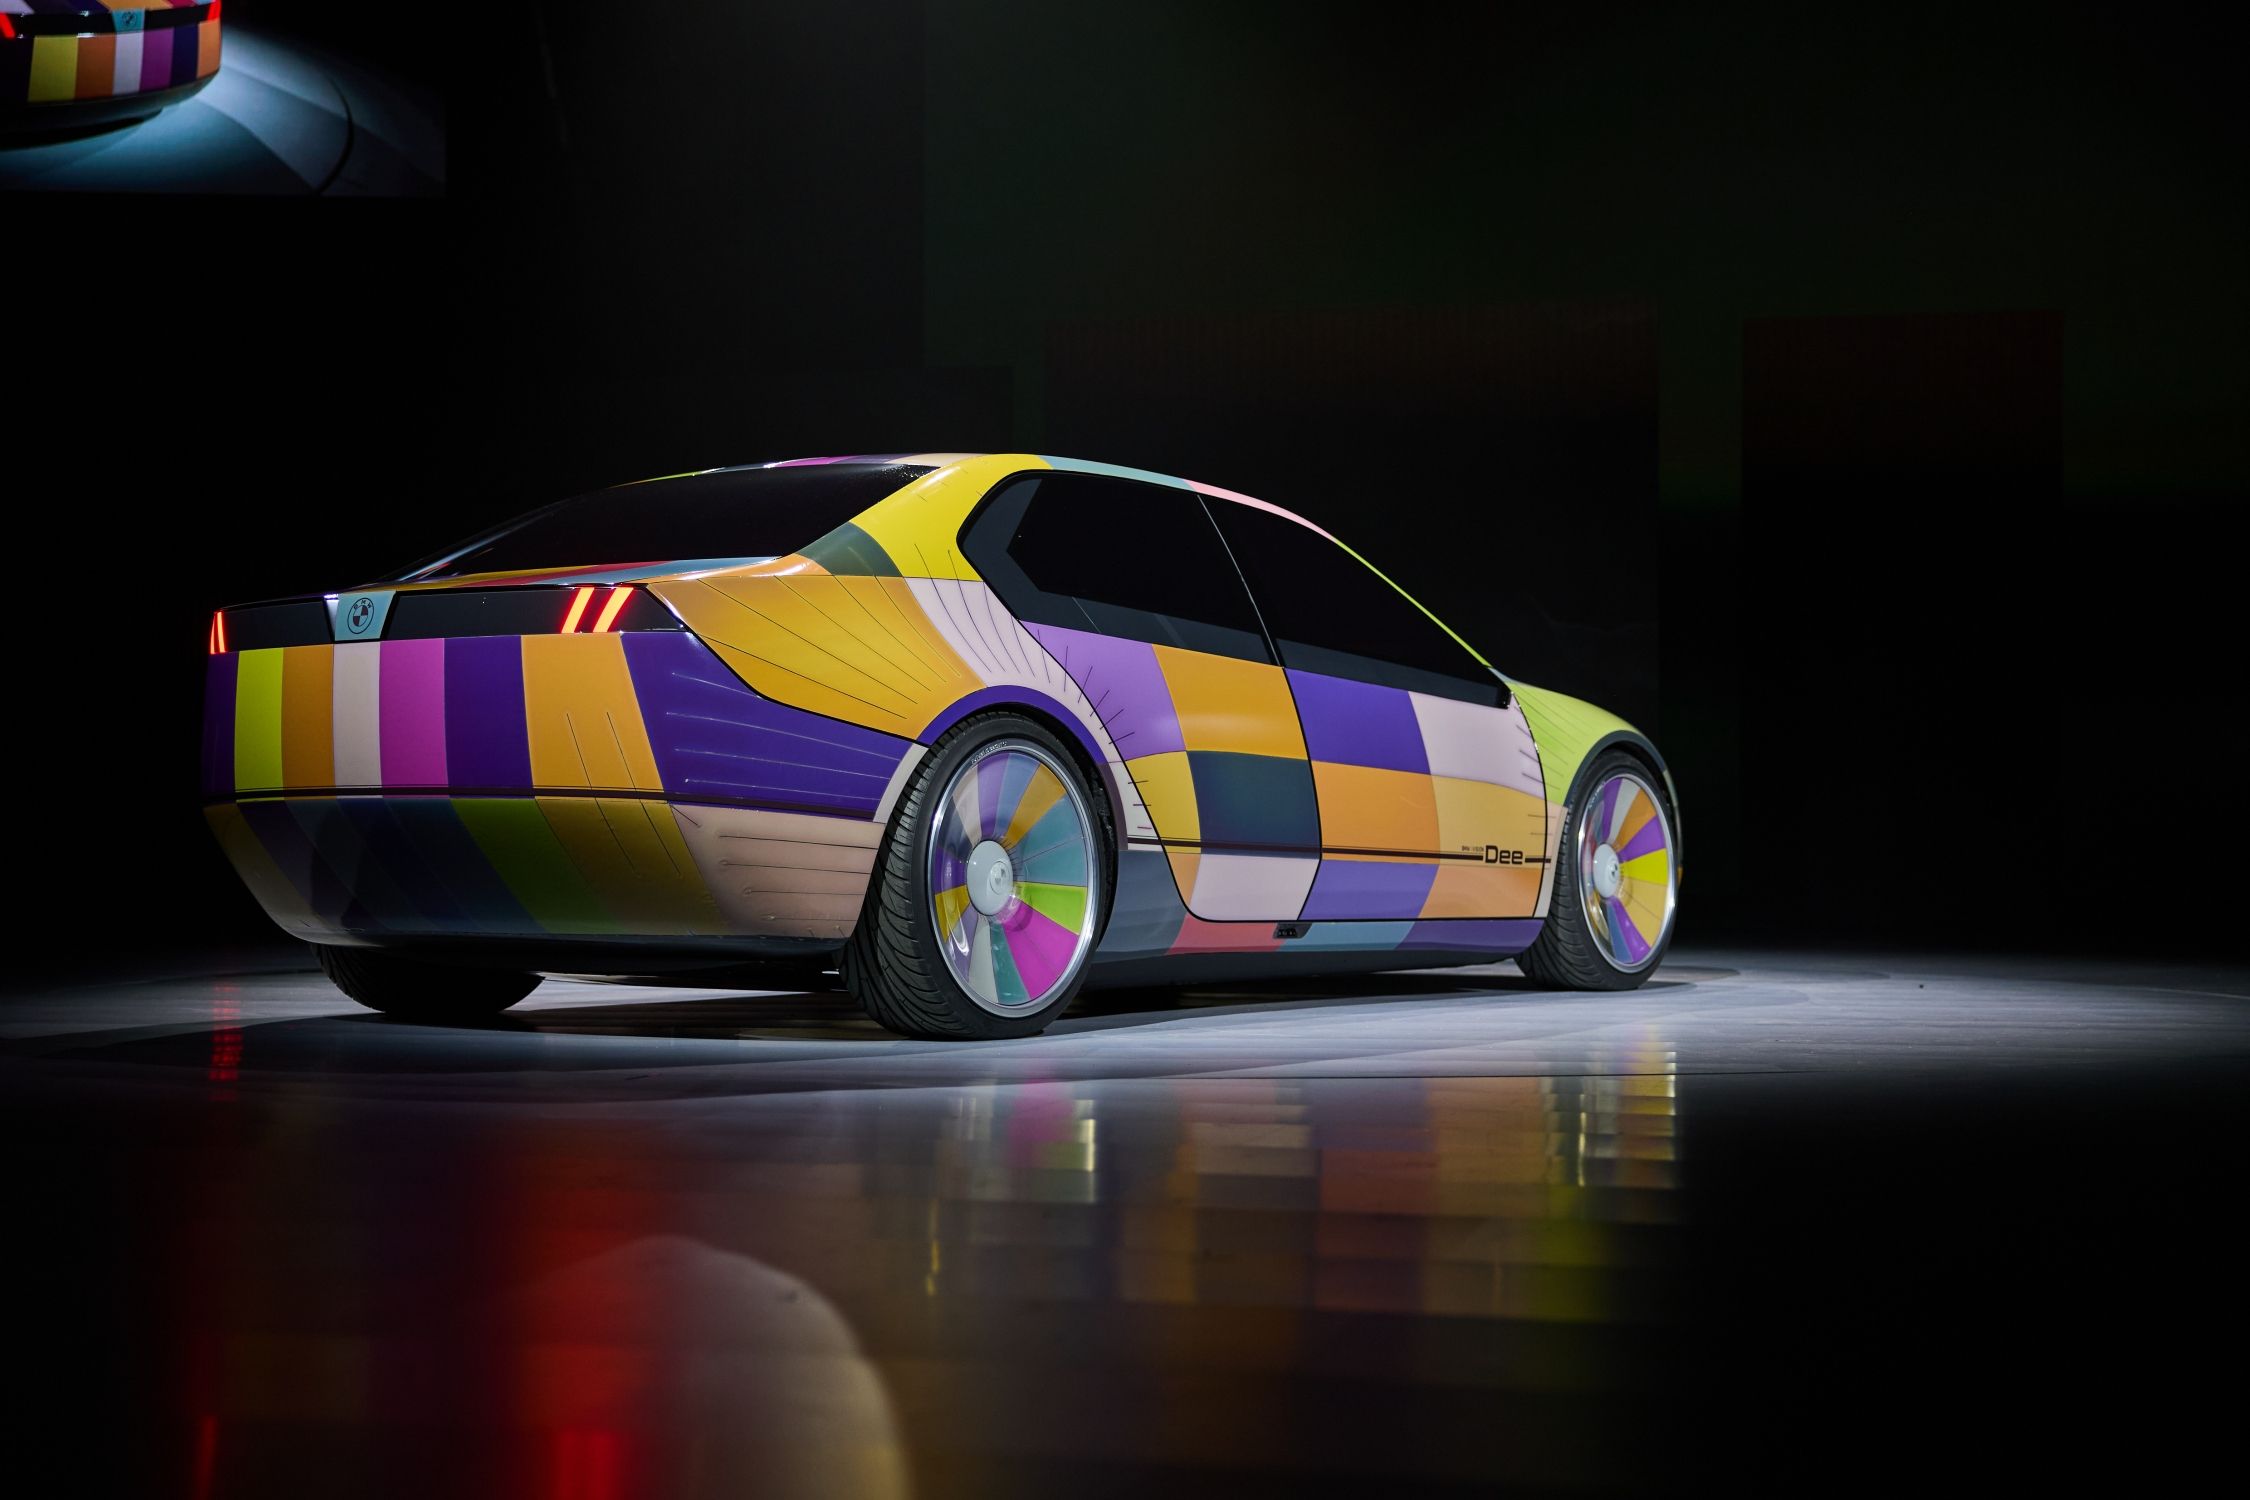 BMW présente une technologie qui permet de changer la couleur de sa voiture  en quelques secondes